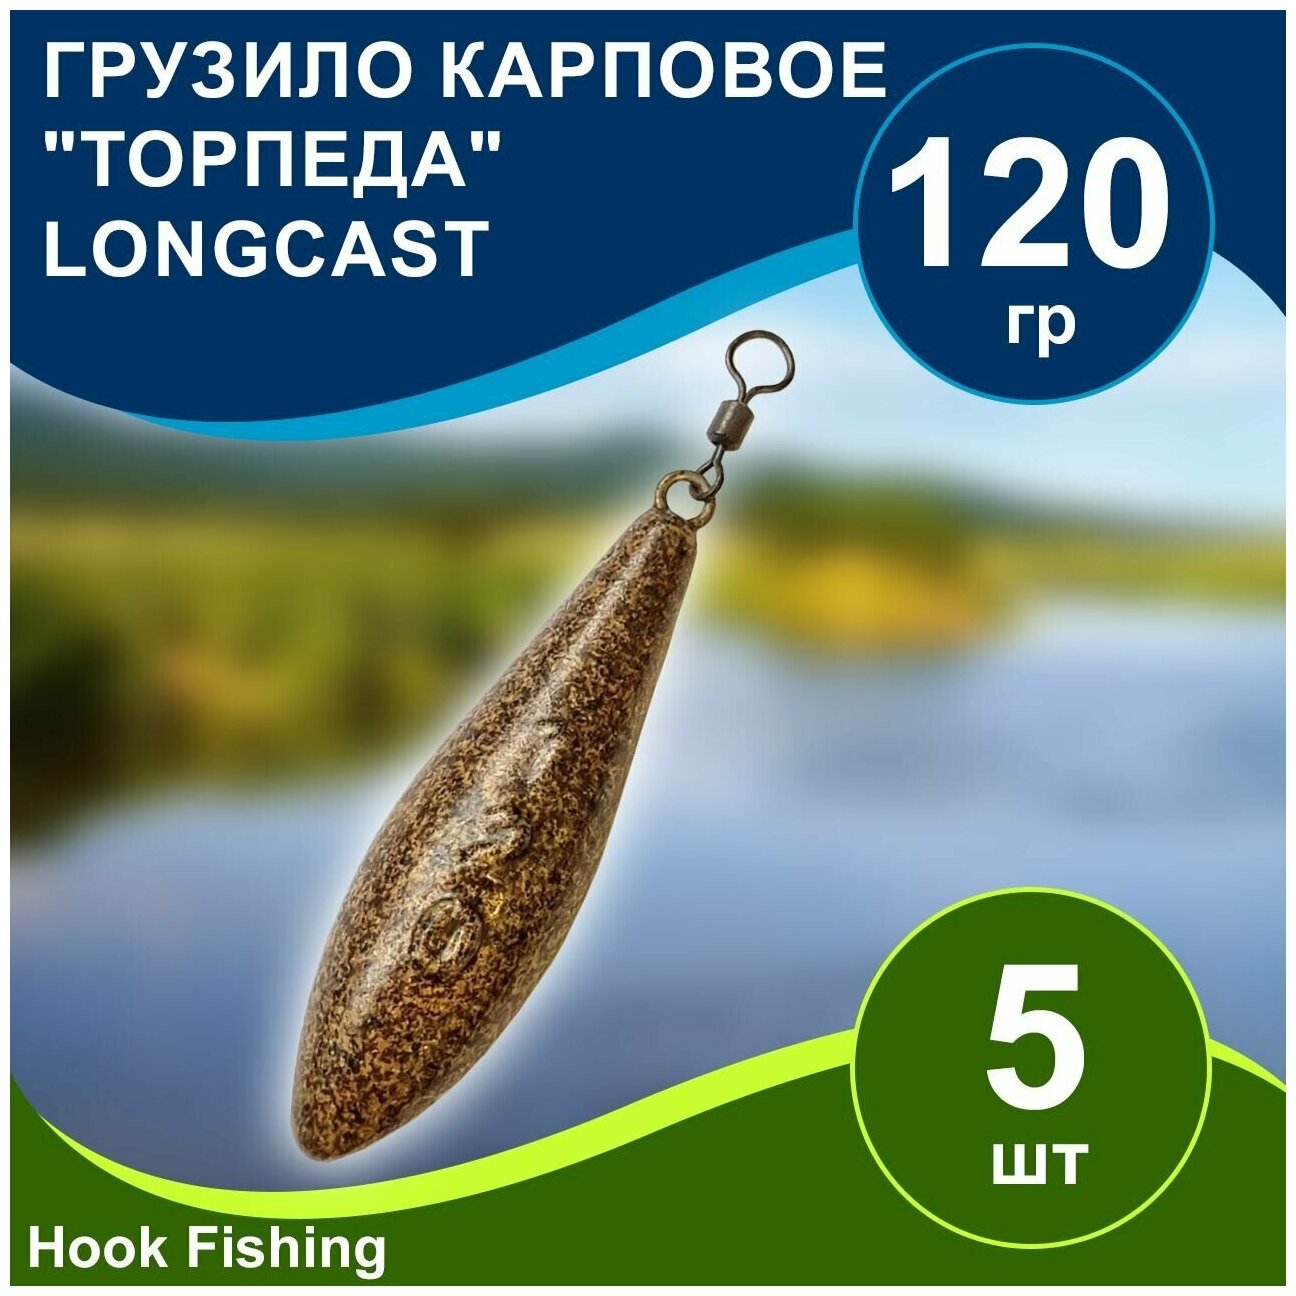 Груз рыболовный карповый "Торпеда/Лонгкаст на вертлюге" 120гр 5шт цвет коричневый, Longcast